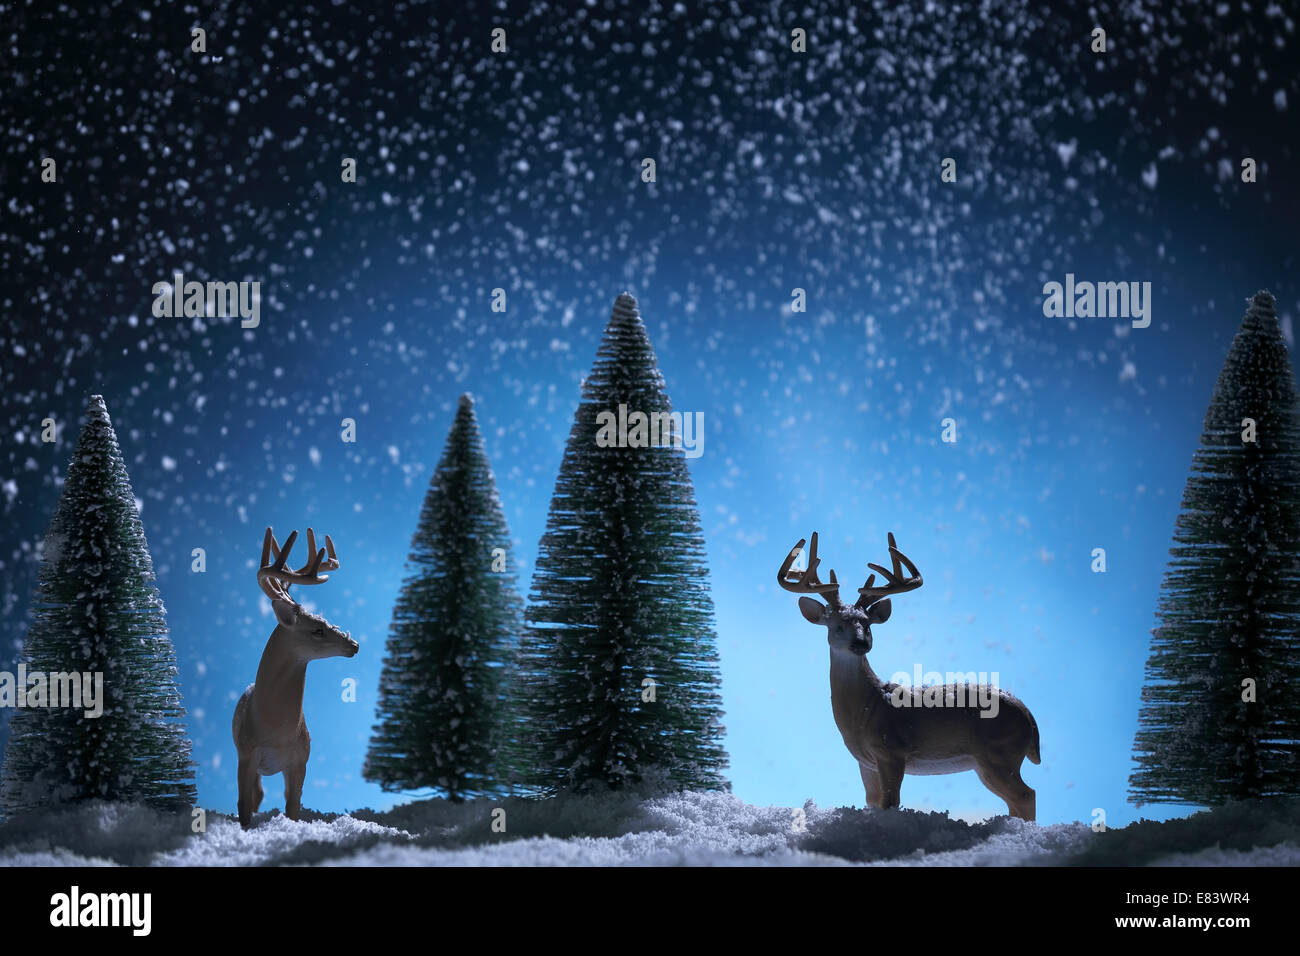 Silueta de ciervos y abeto de Navidad en background.Tarjeta de felicitación de Navidad. Foto de stock